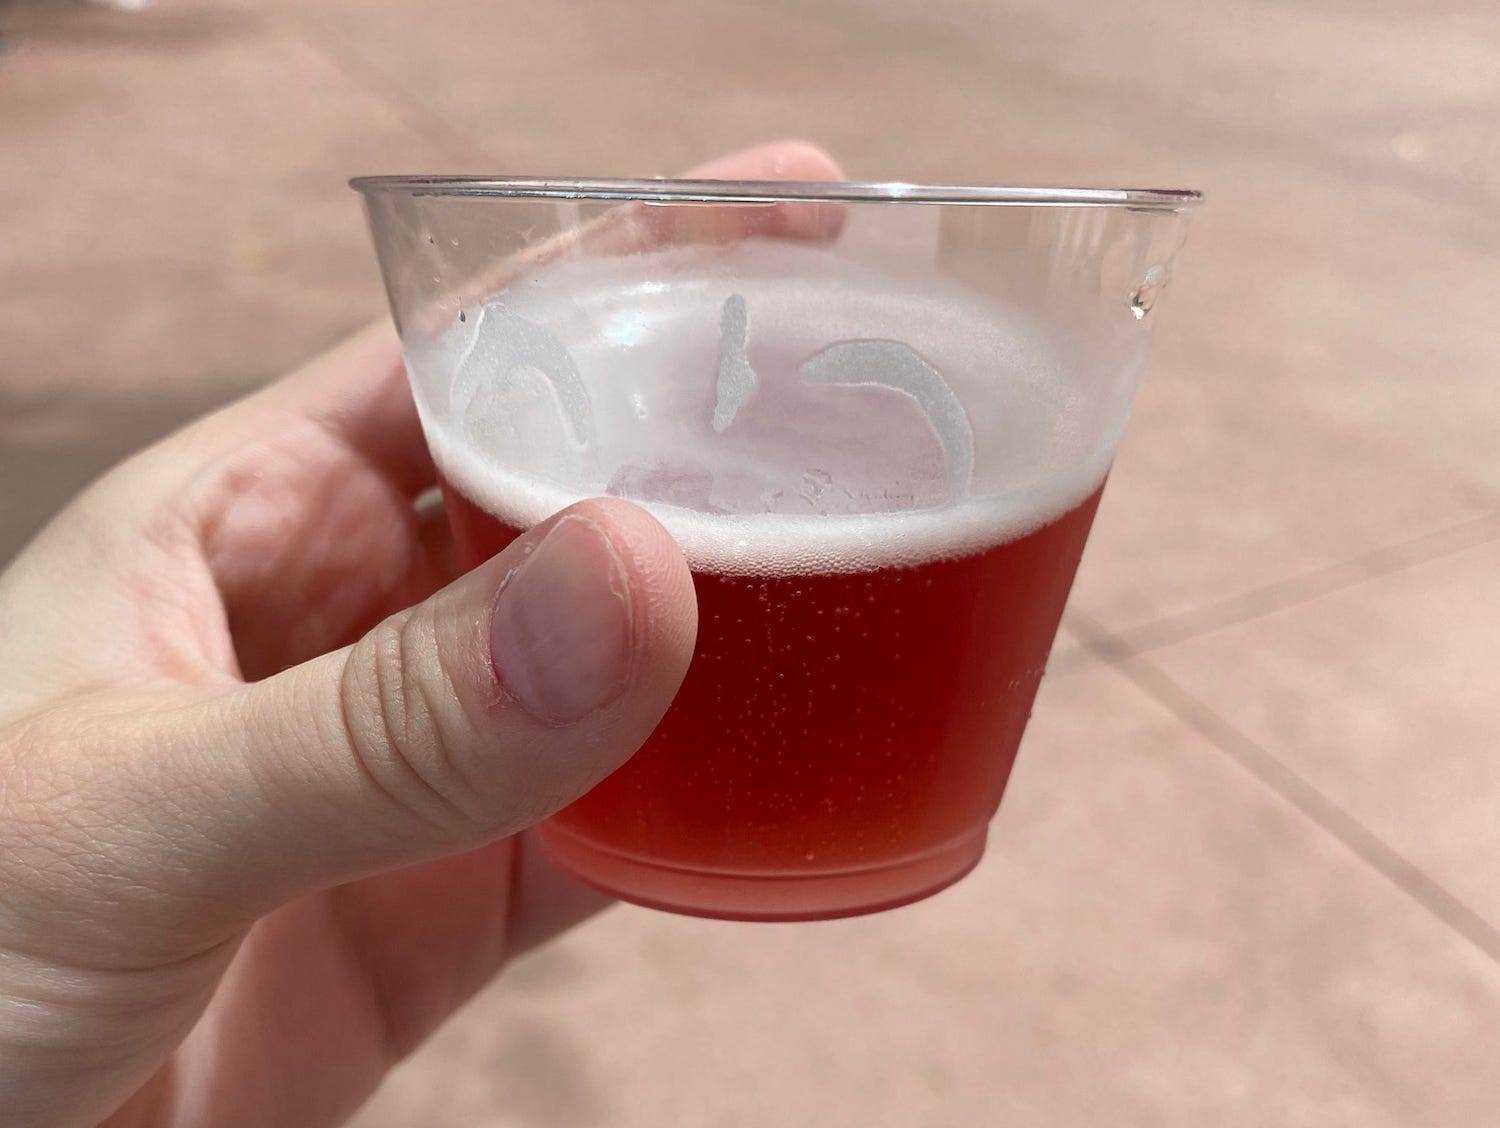 Ein Schöfferhofer Wild Cherry Hefeweizen Bier beim Epcot Food & Wine Festival in Disney World.